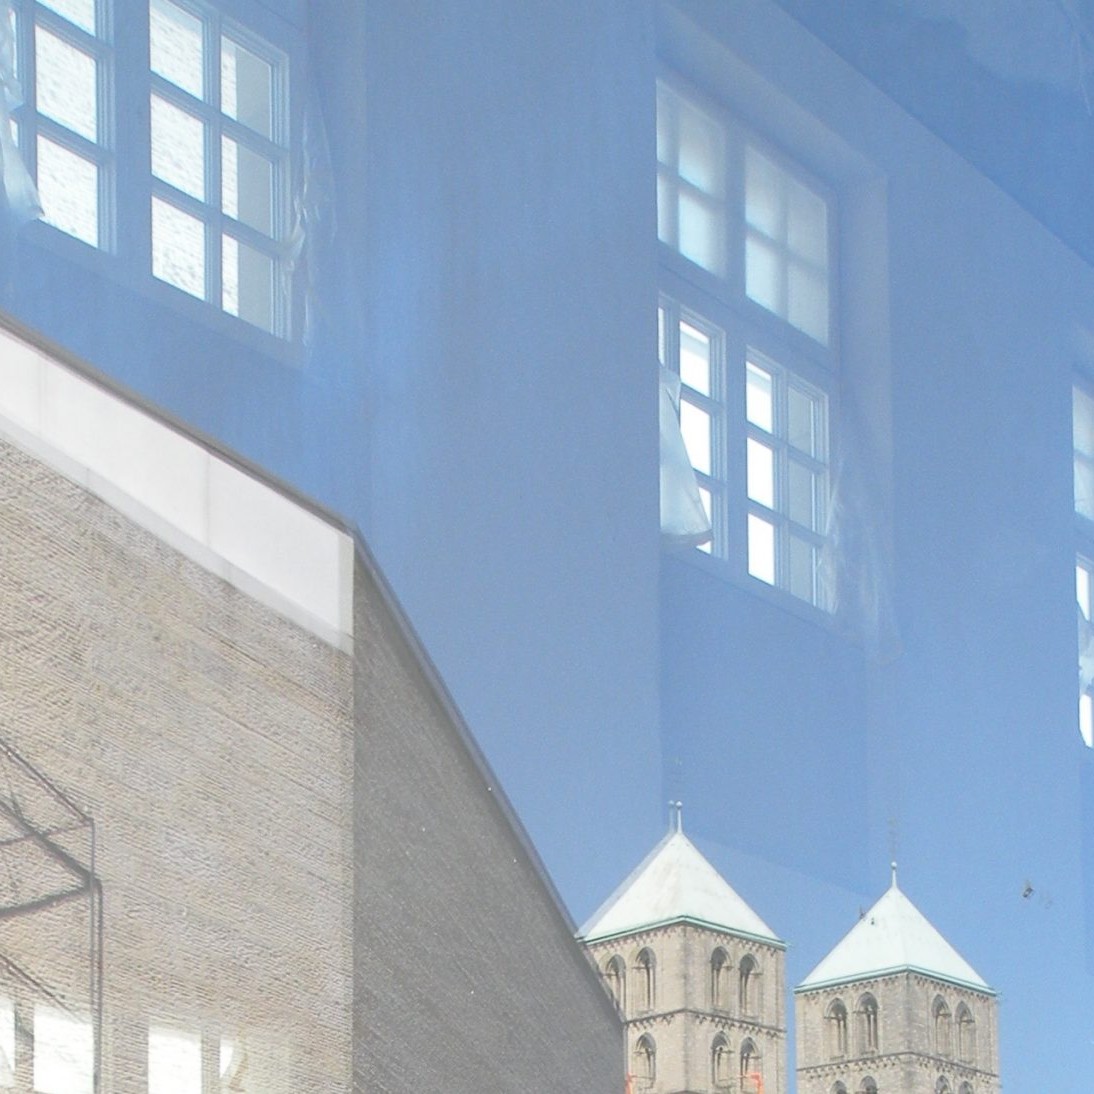 Münster: Spiegelung im Fenster des Geo-Museums - Foto: Stefan Rethfeld